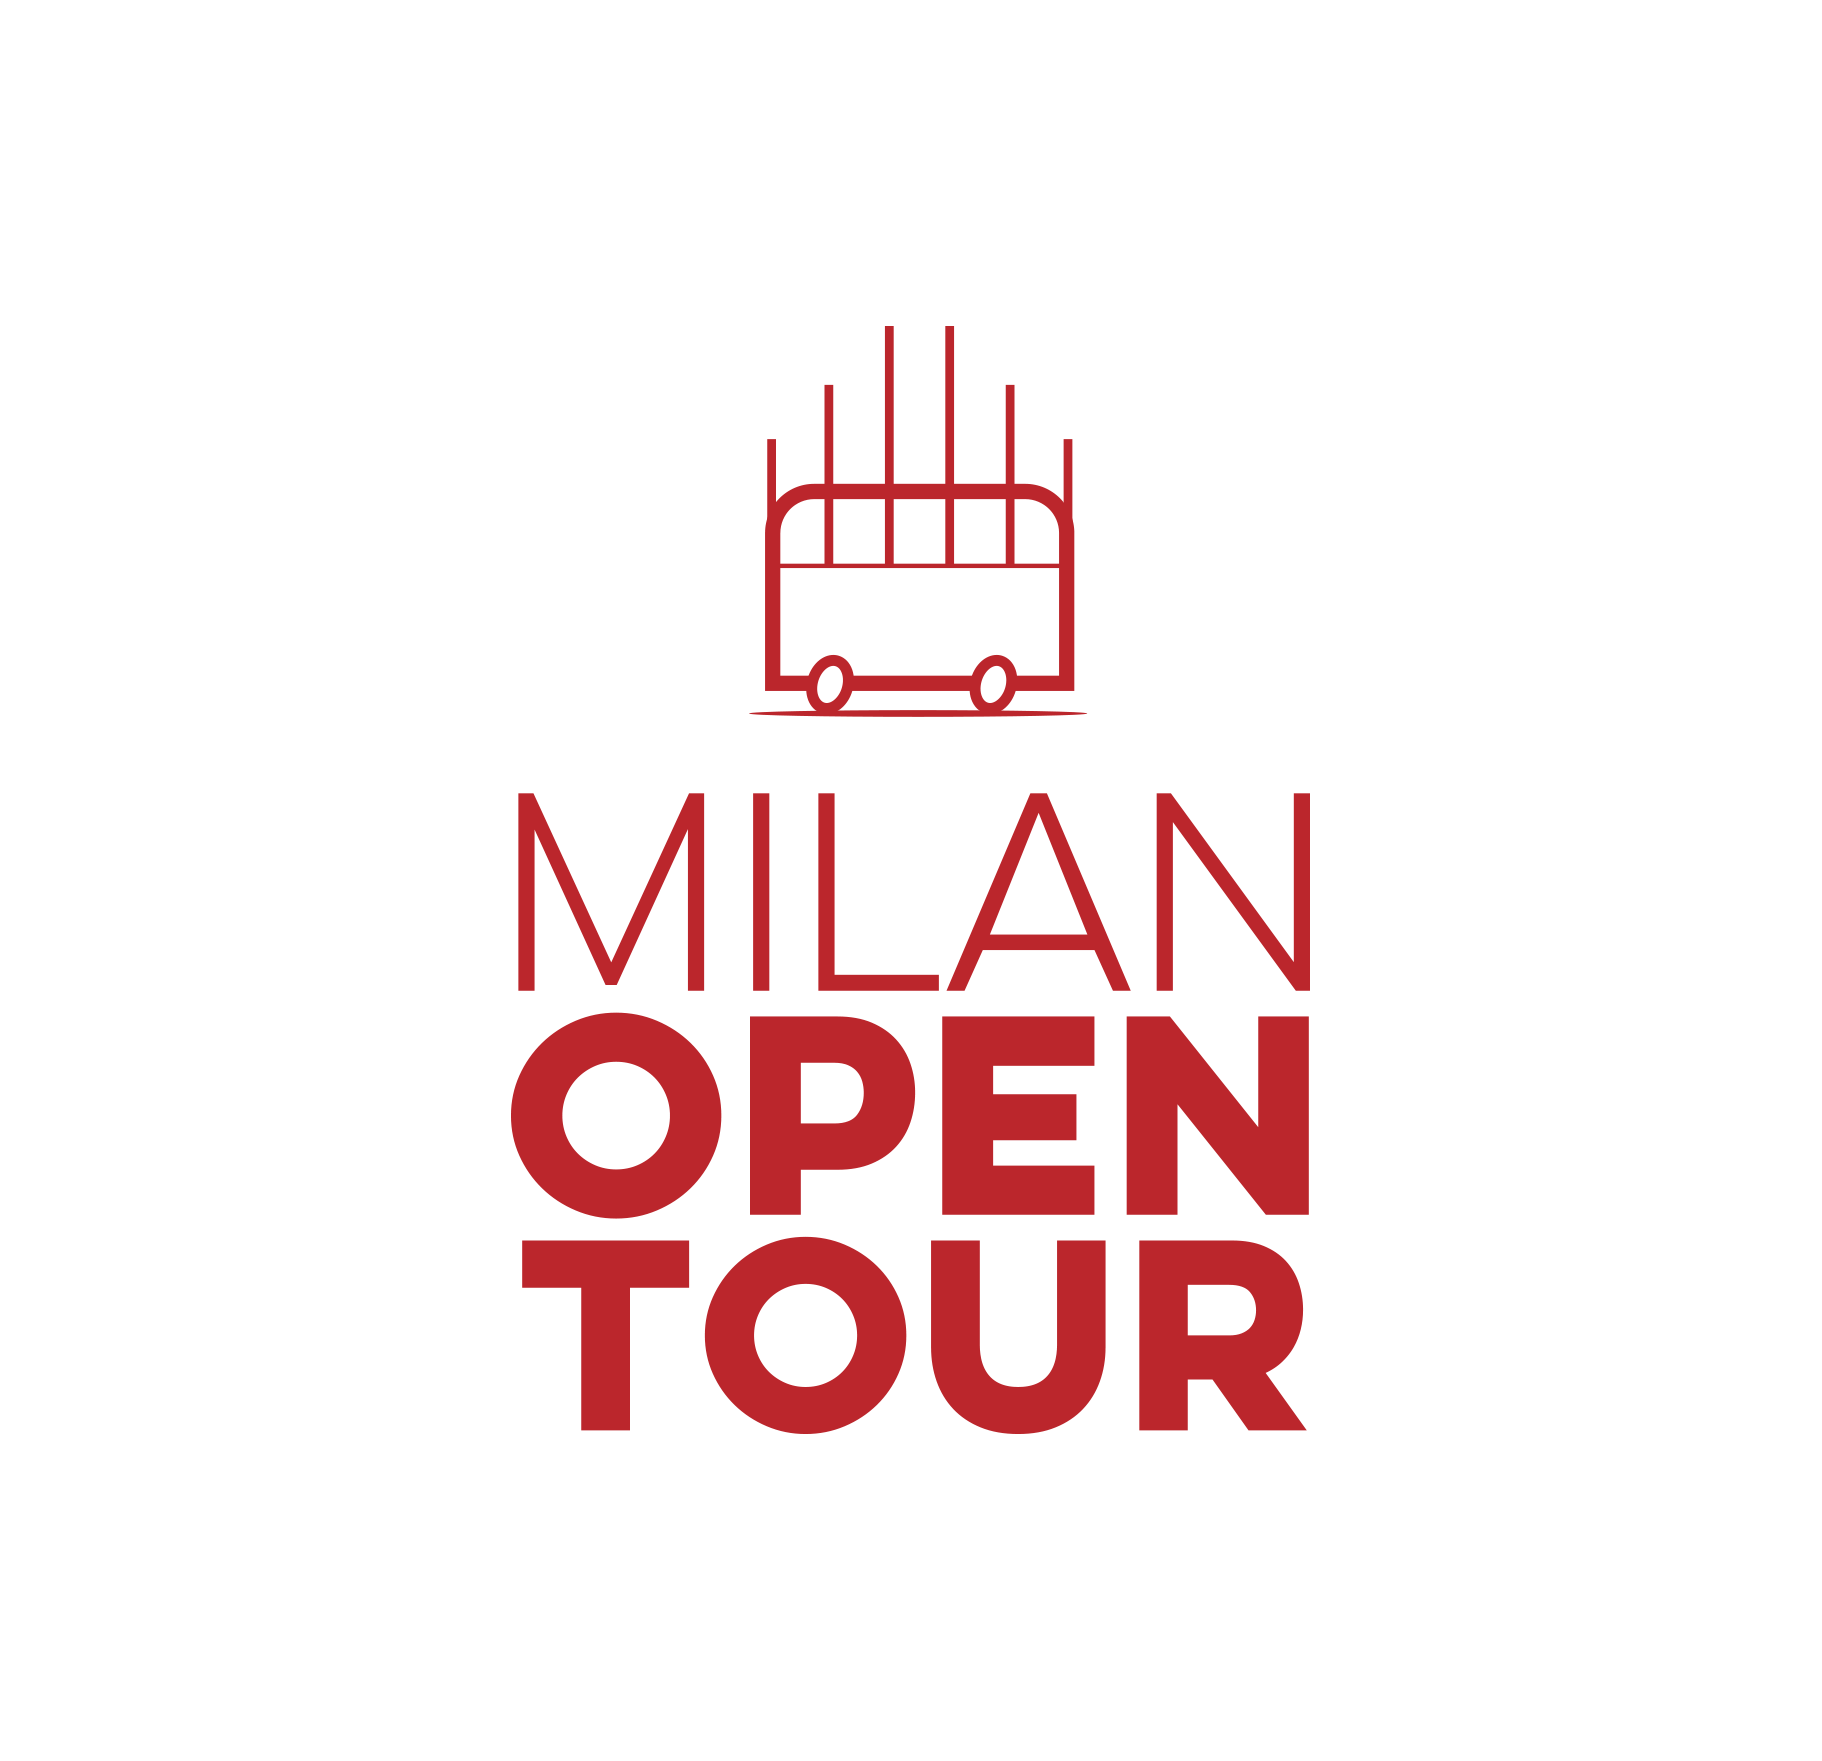 MILAN OPEN TOUR